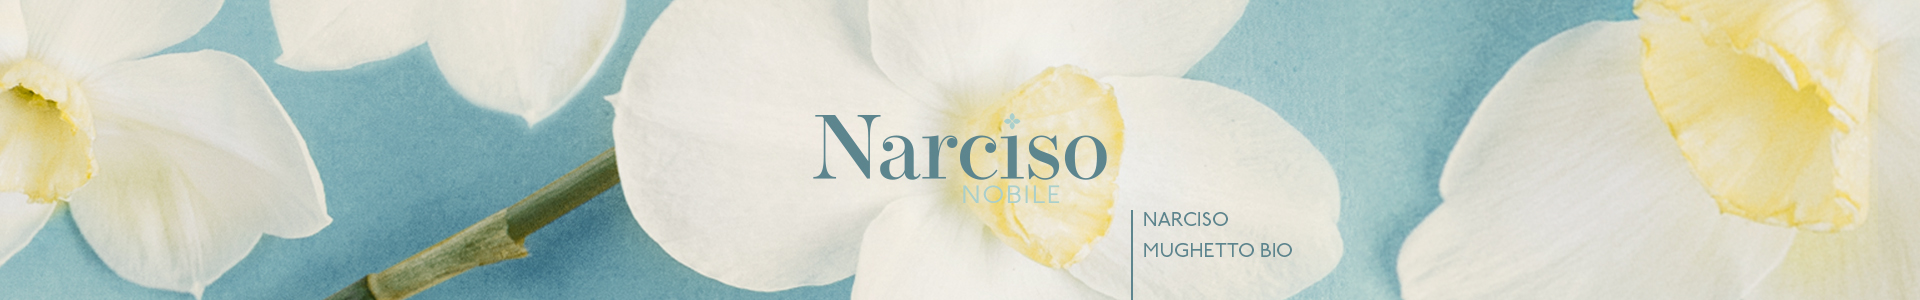 Narciso-Nobile-1920x300-040920-2.jpg